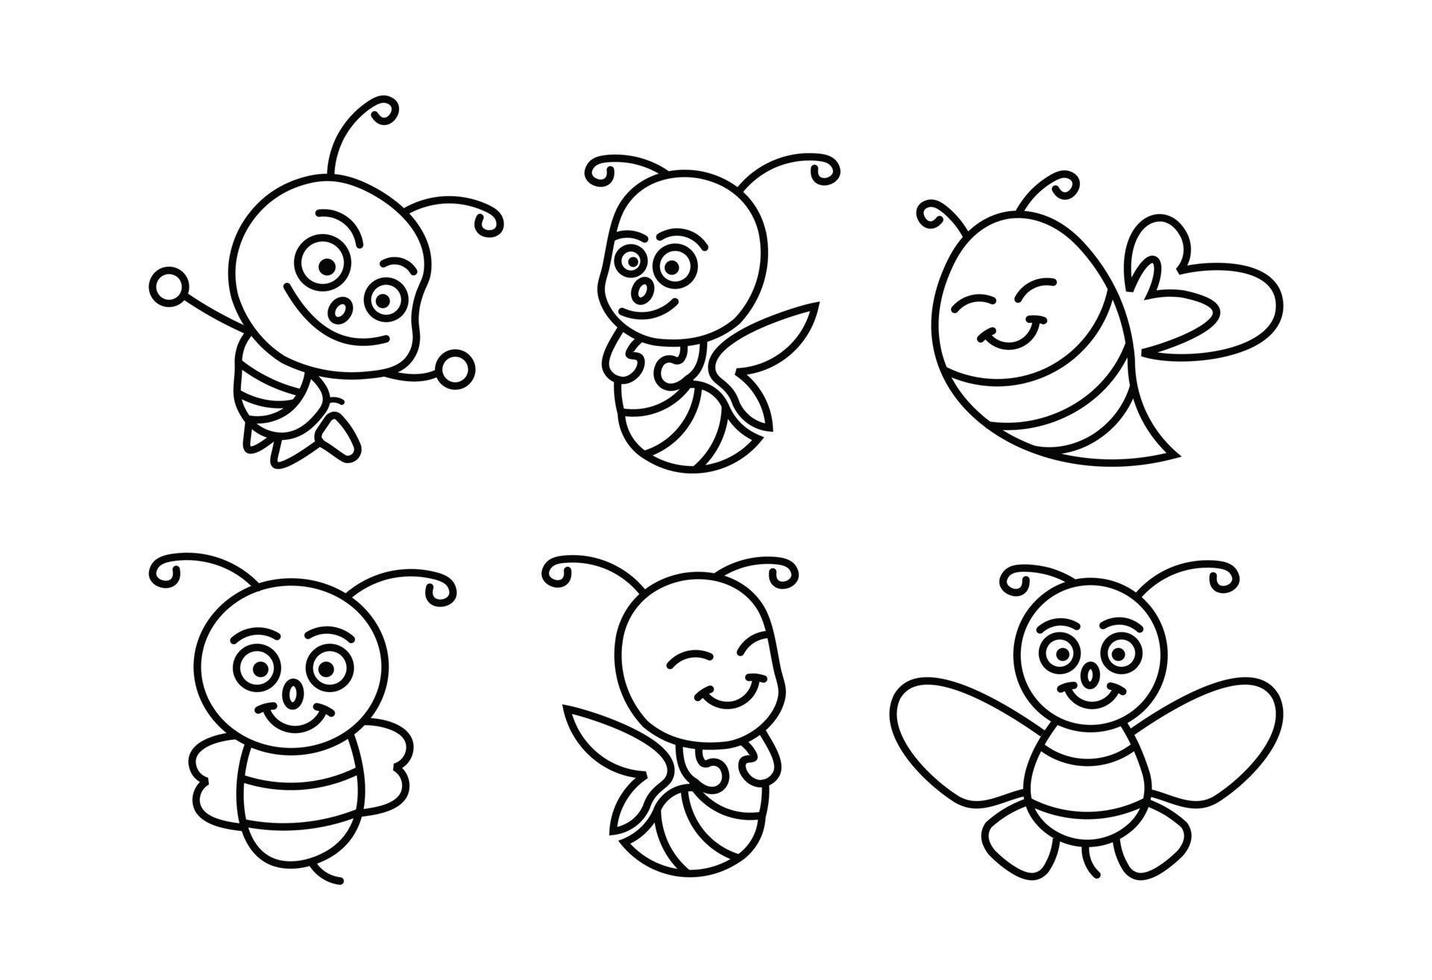 set pictogram lijn van honing en bijen etiketten voor honing logo producten, pictogram vliegende bij vlakke stijl vectorillustratie. vector